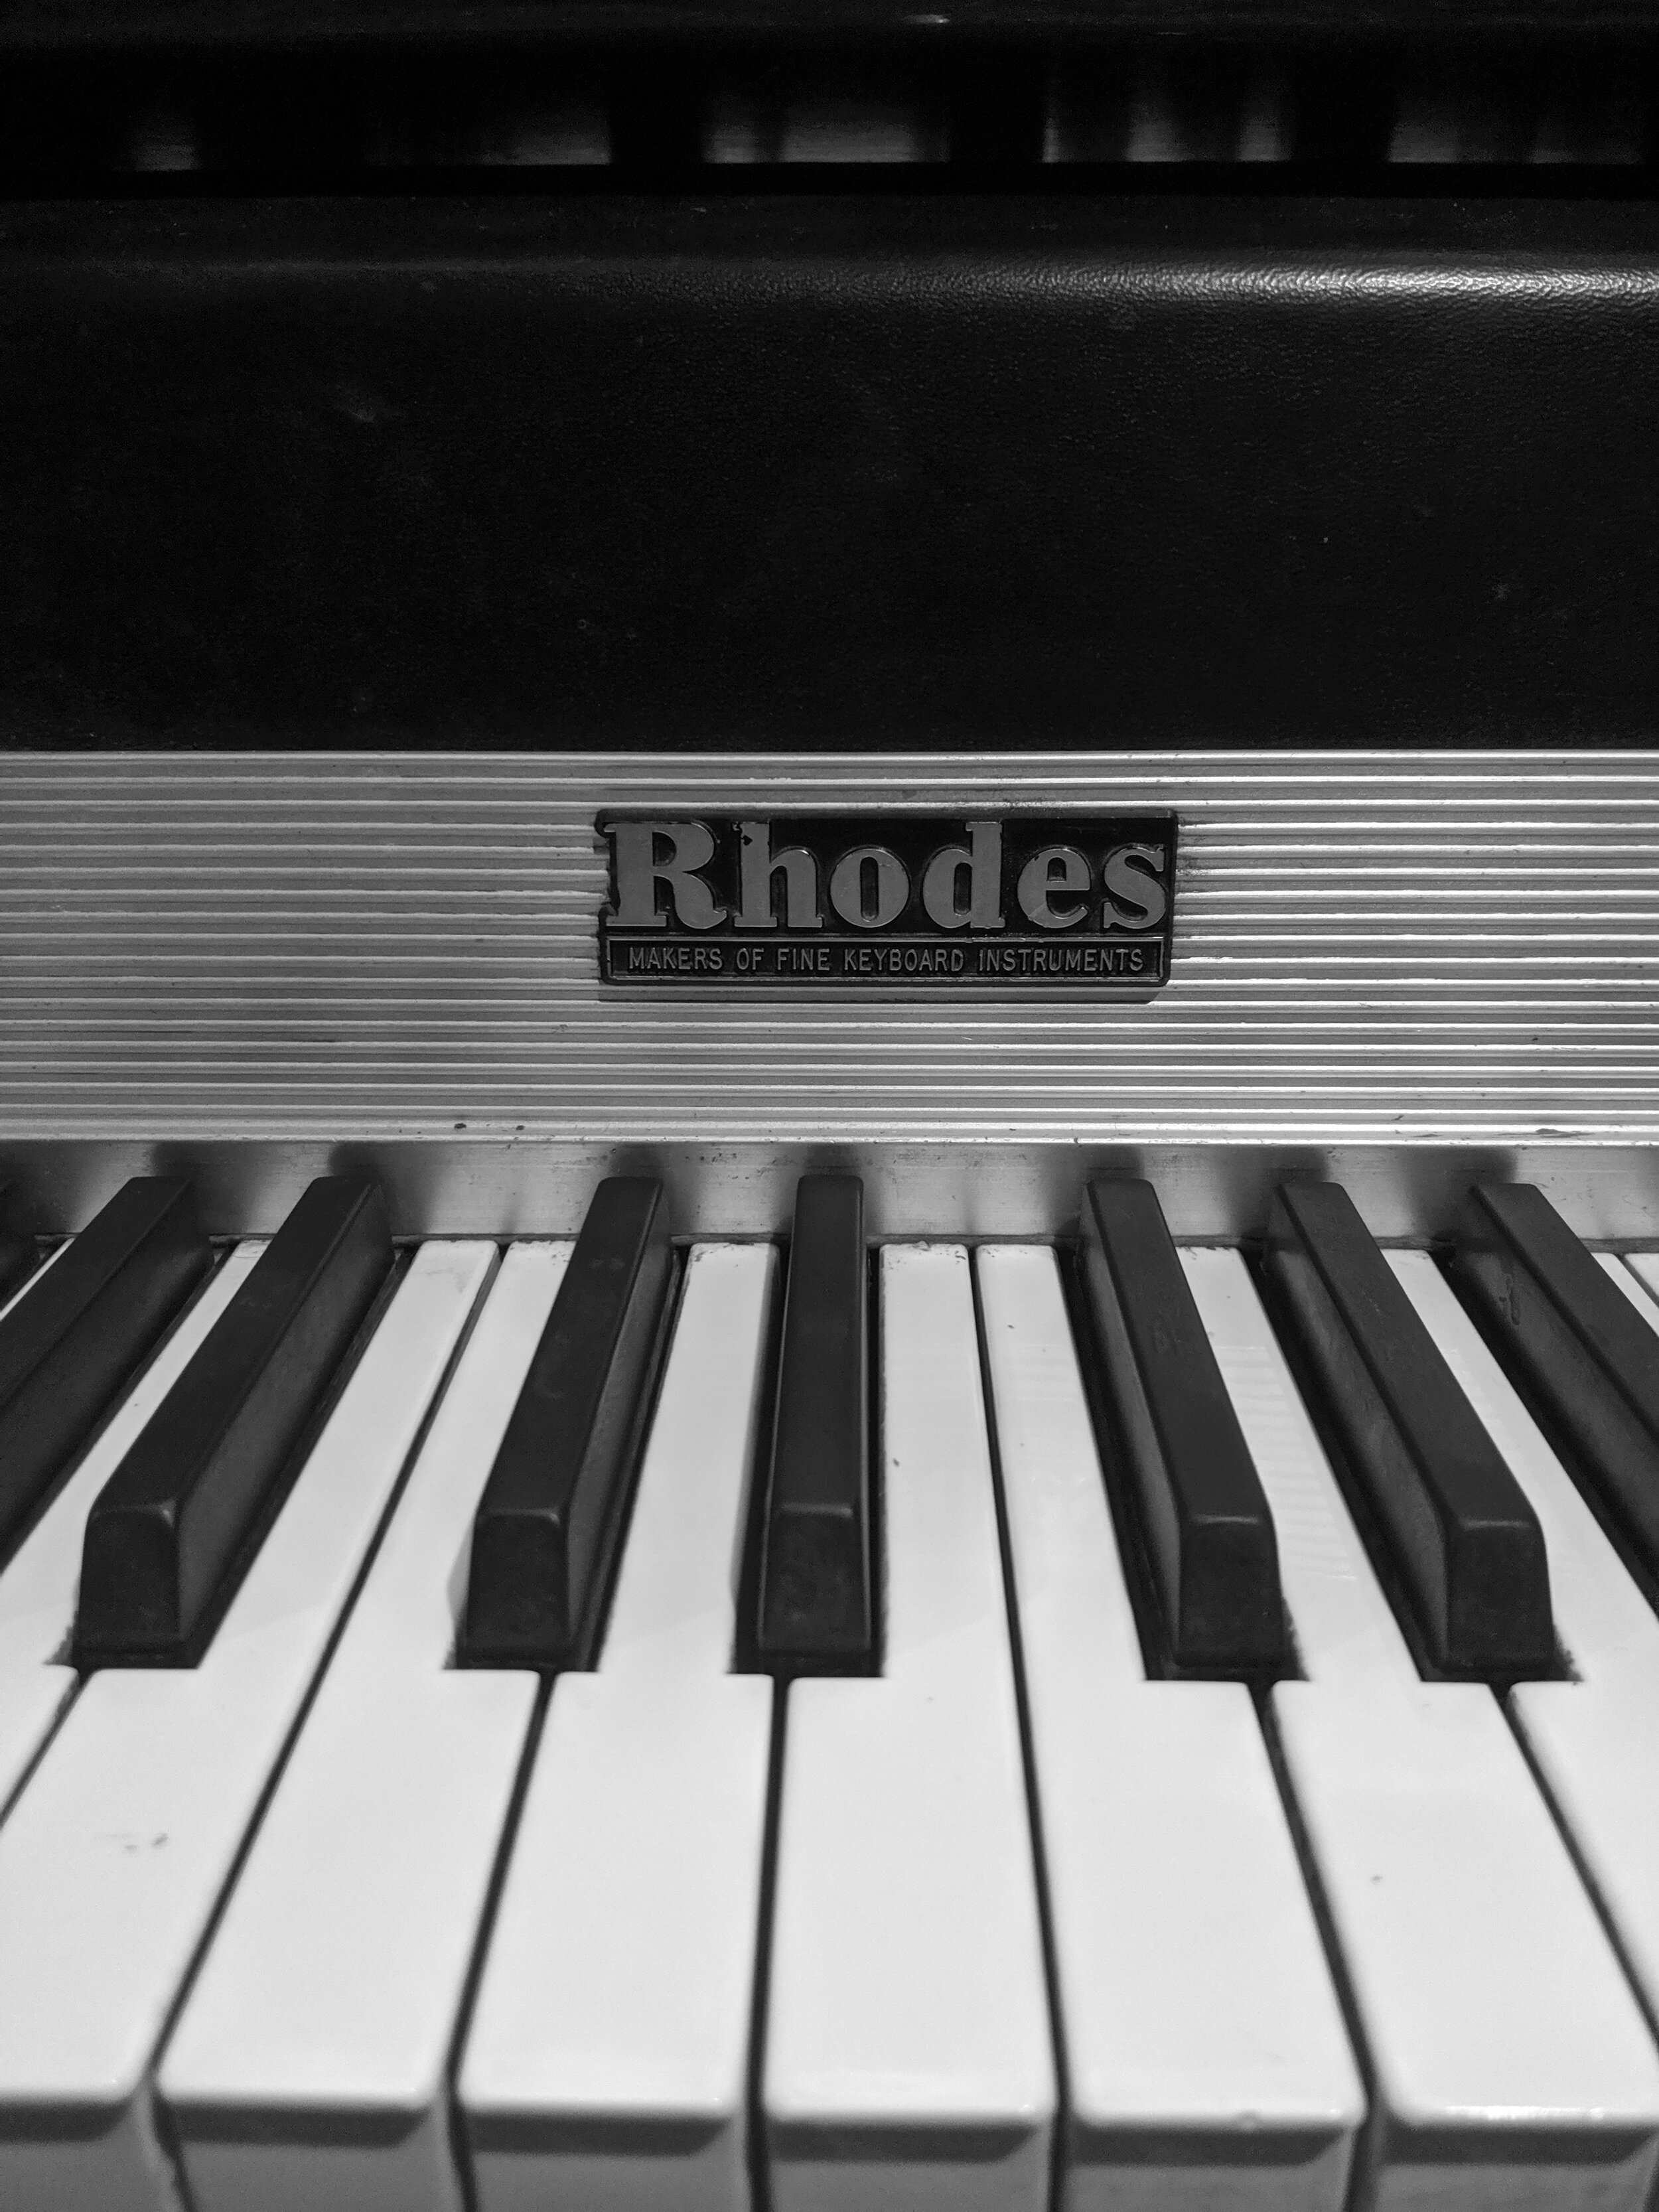 The Rhodes